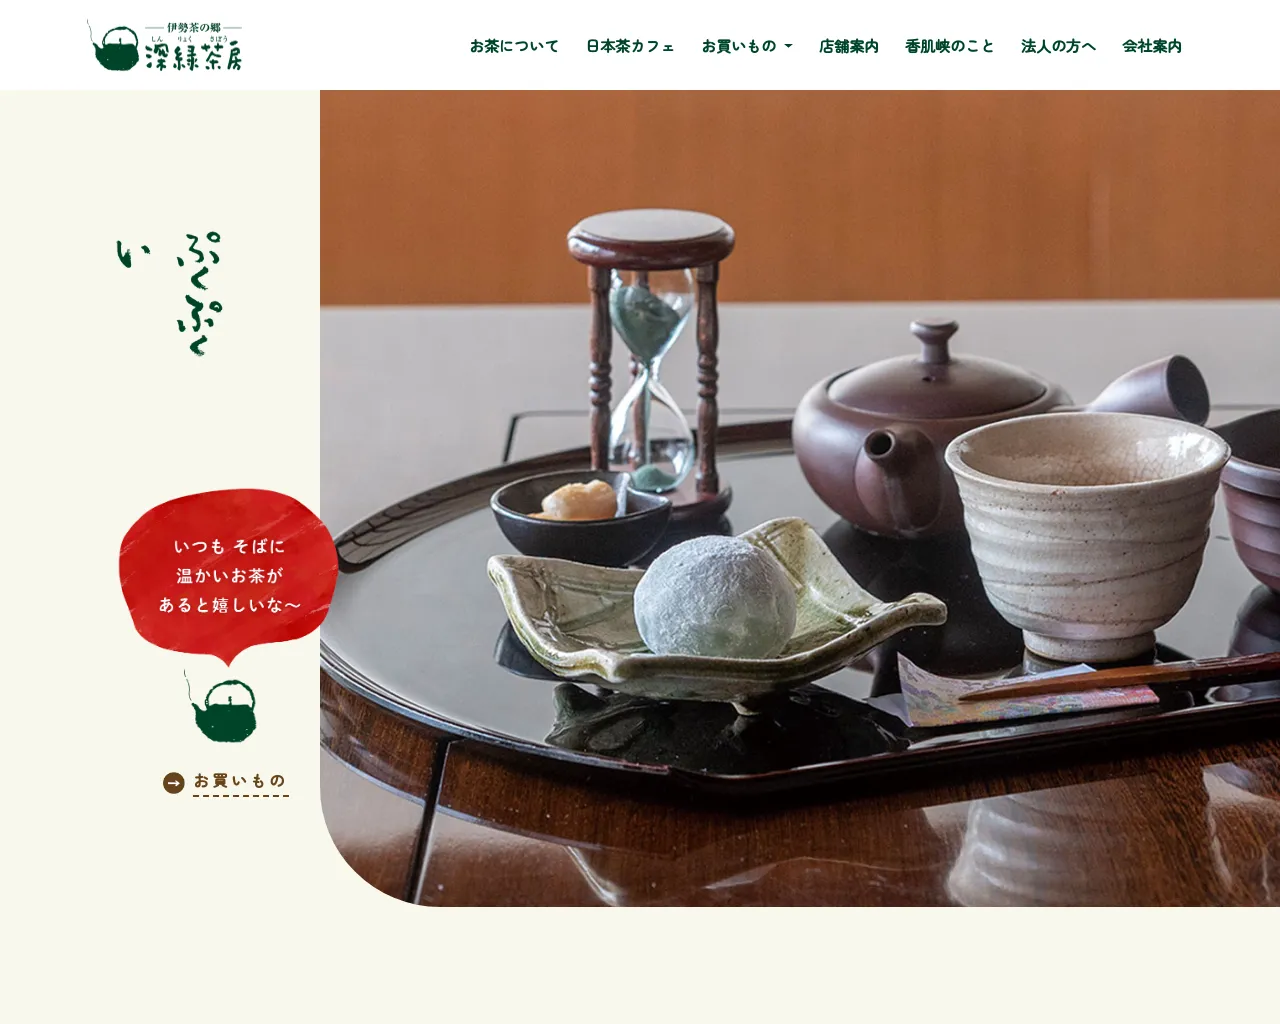 (有)深緑茶房 産直茶販売店 site